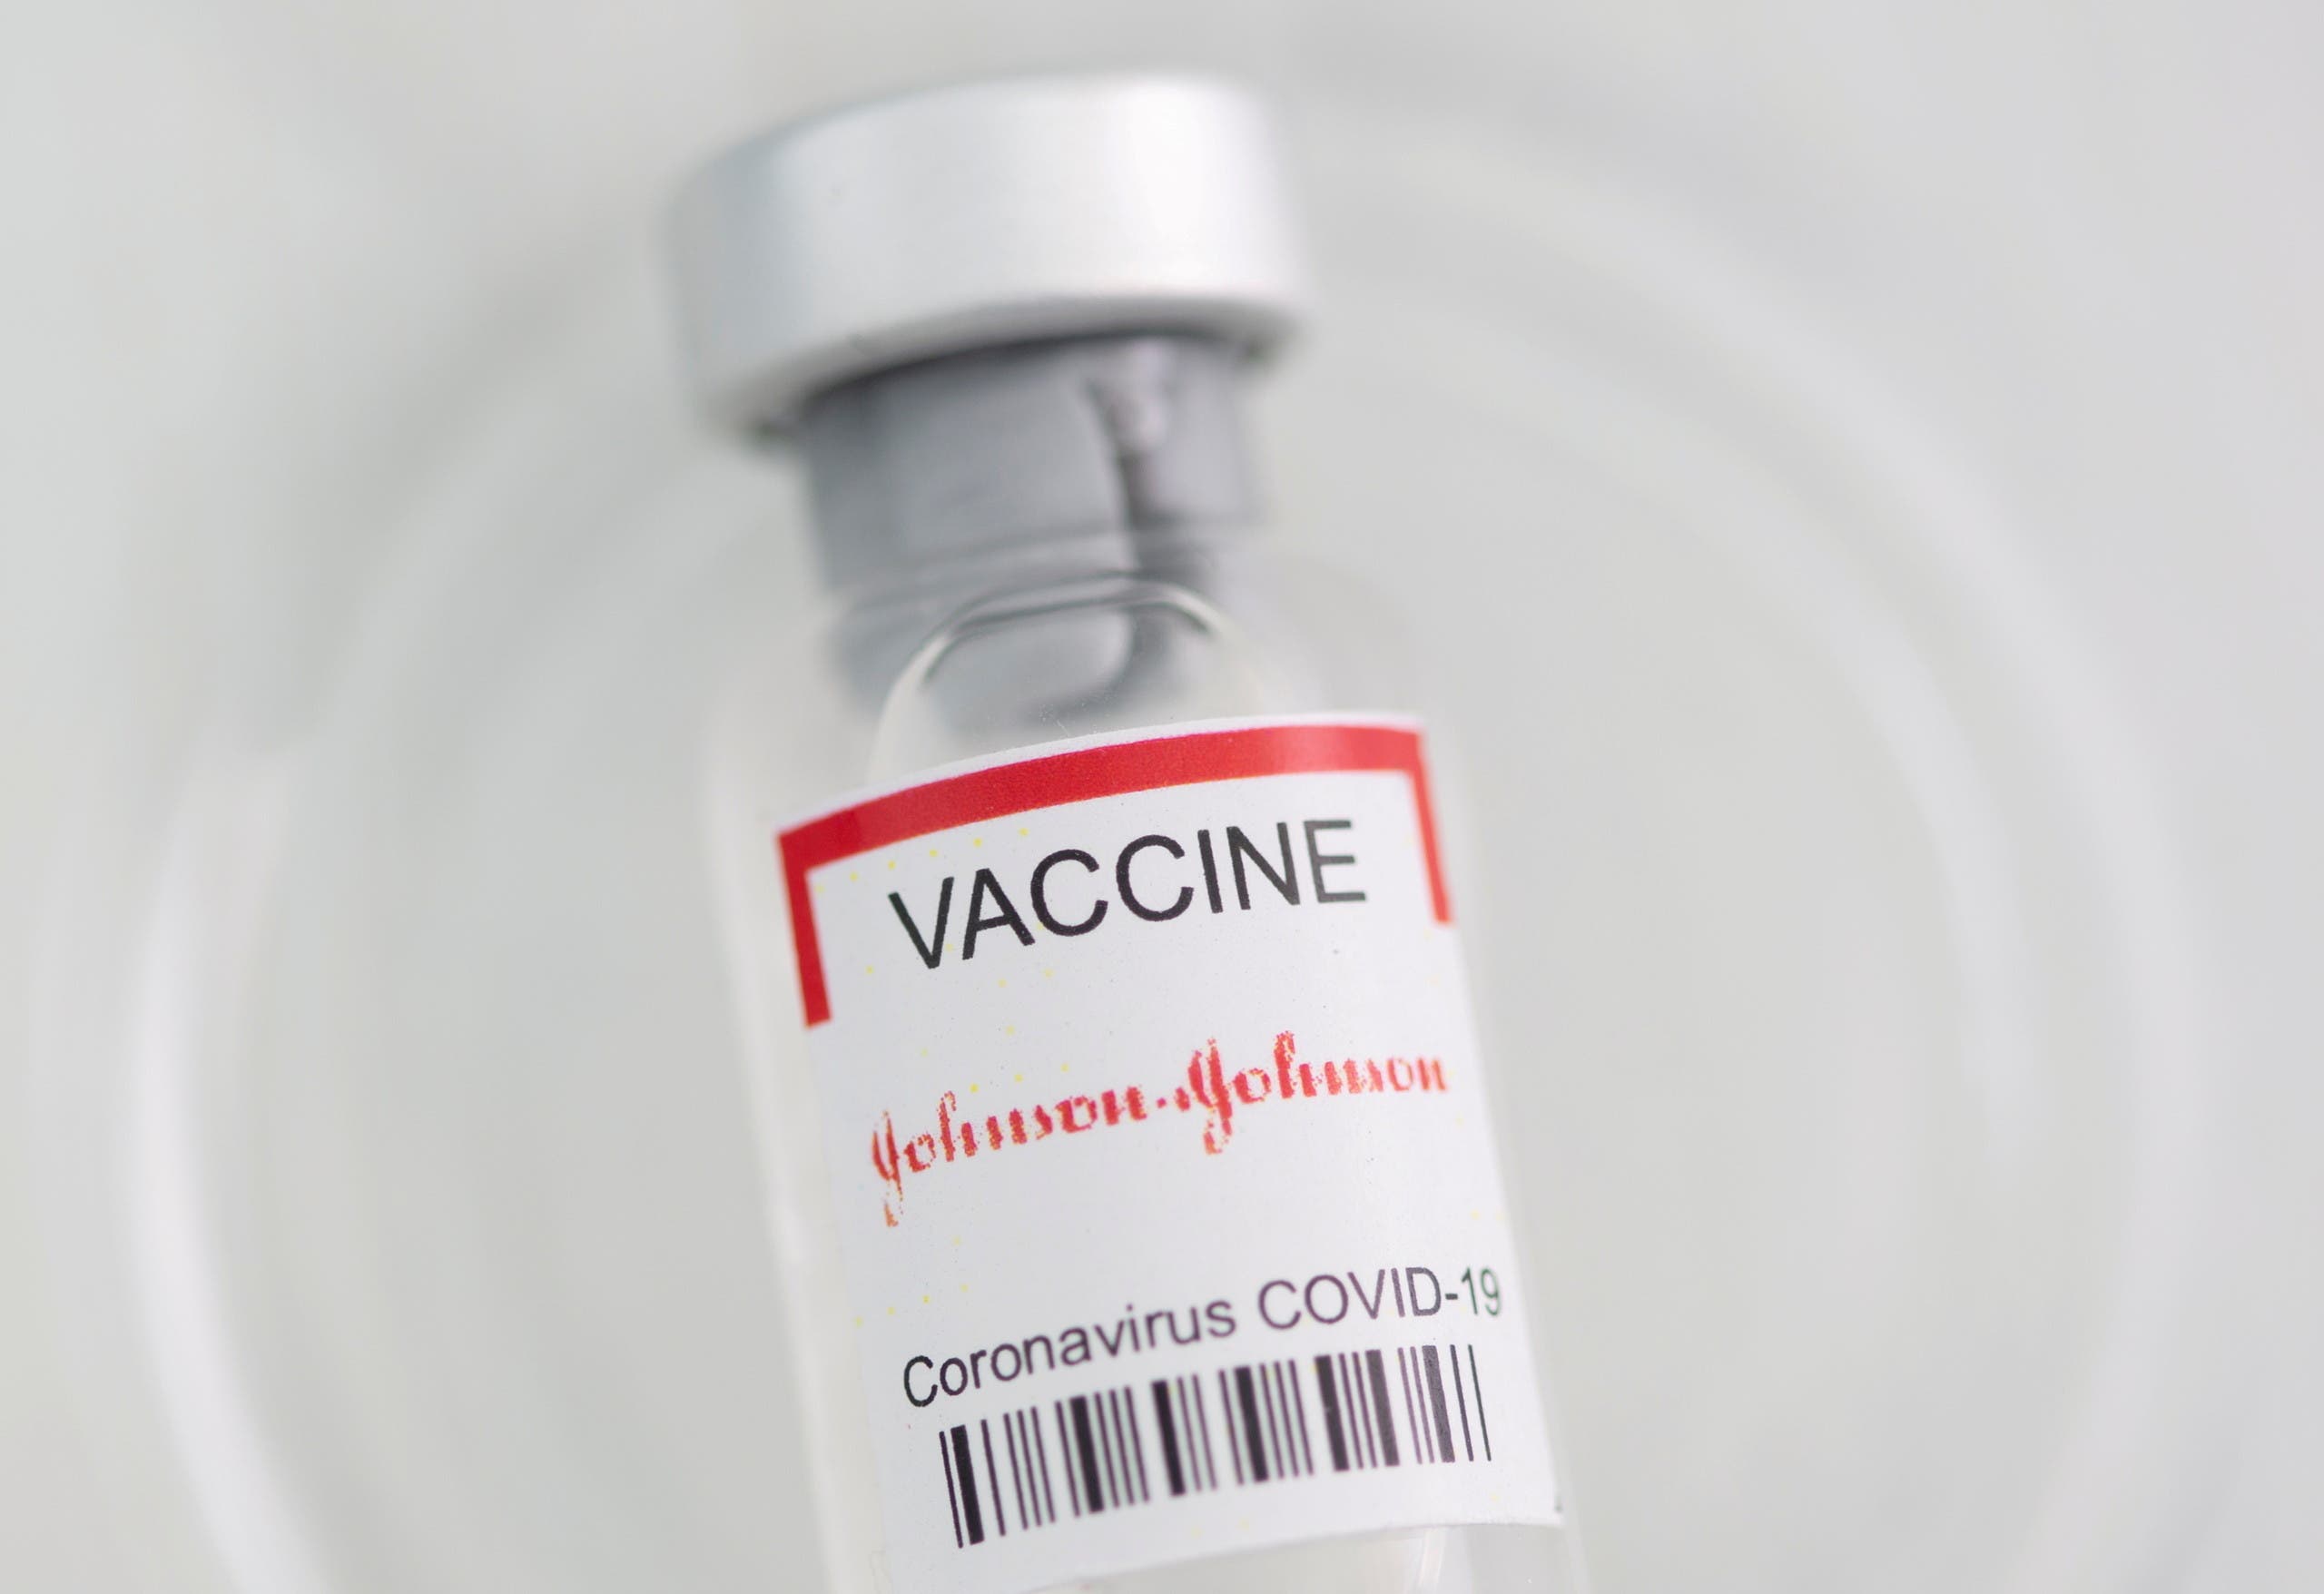 فيروس كورونا.. انخفاض الصفائح الدموية بسبب هذا اللقاح!